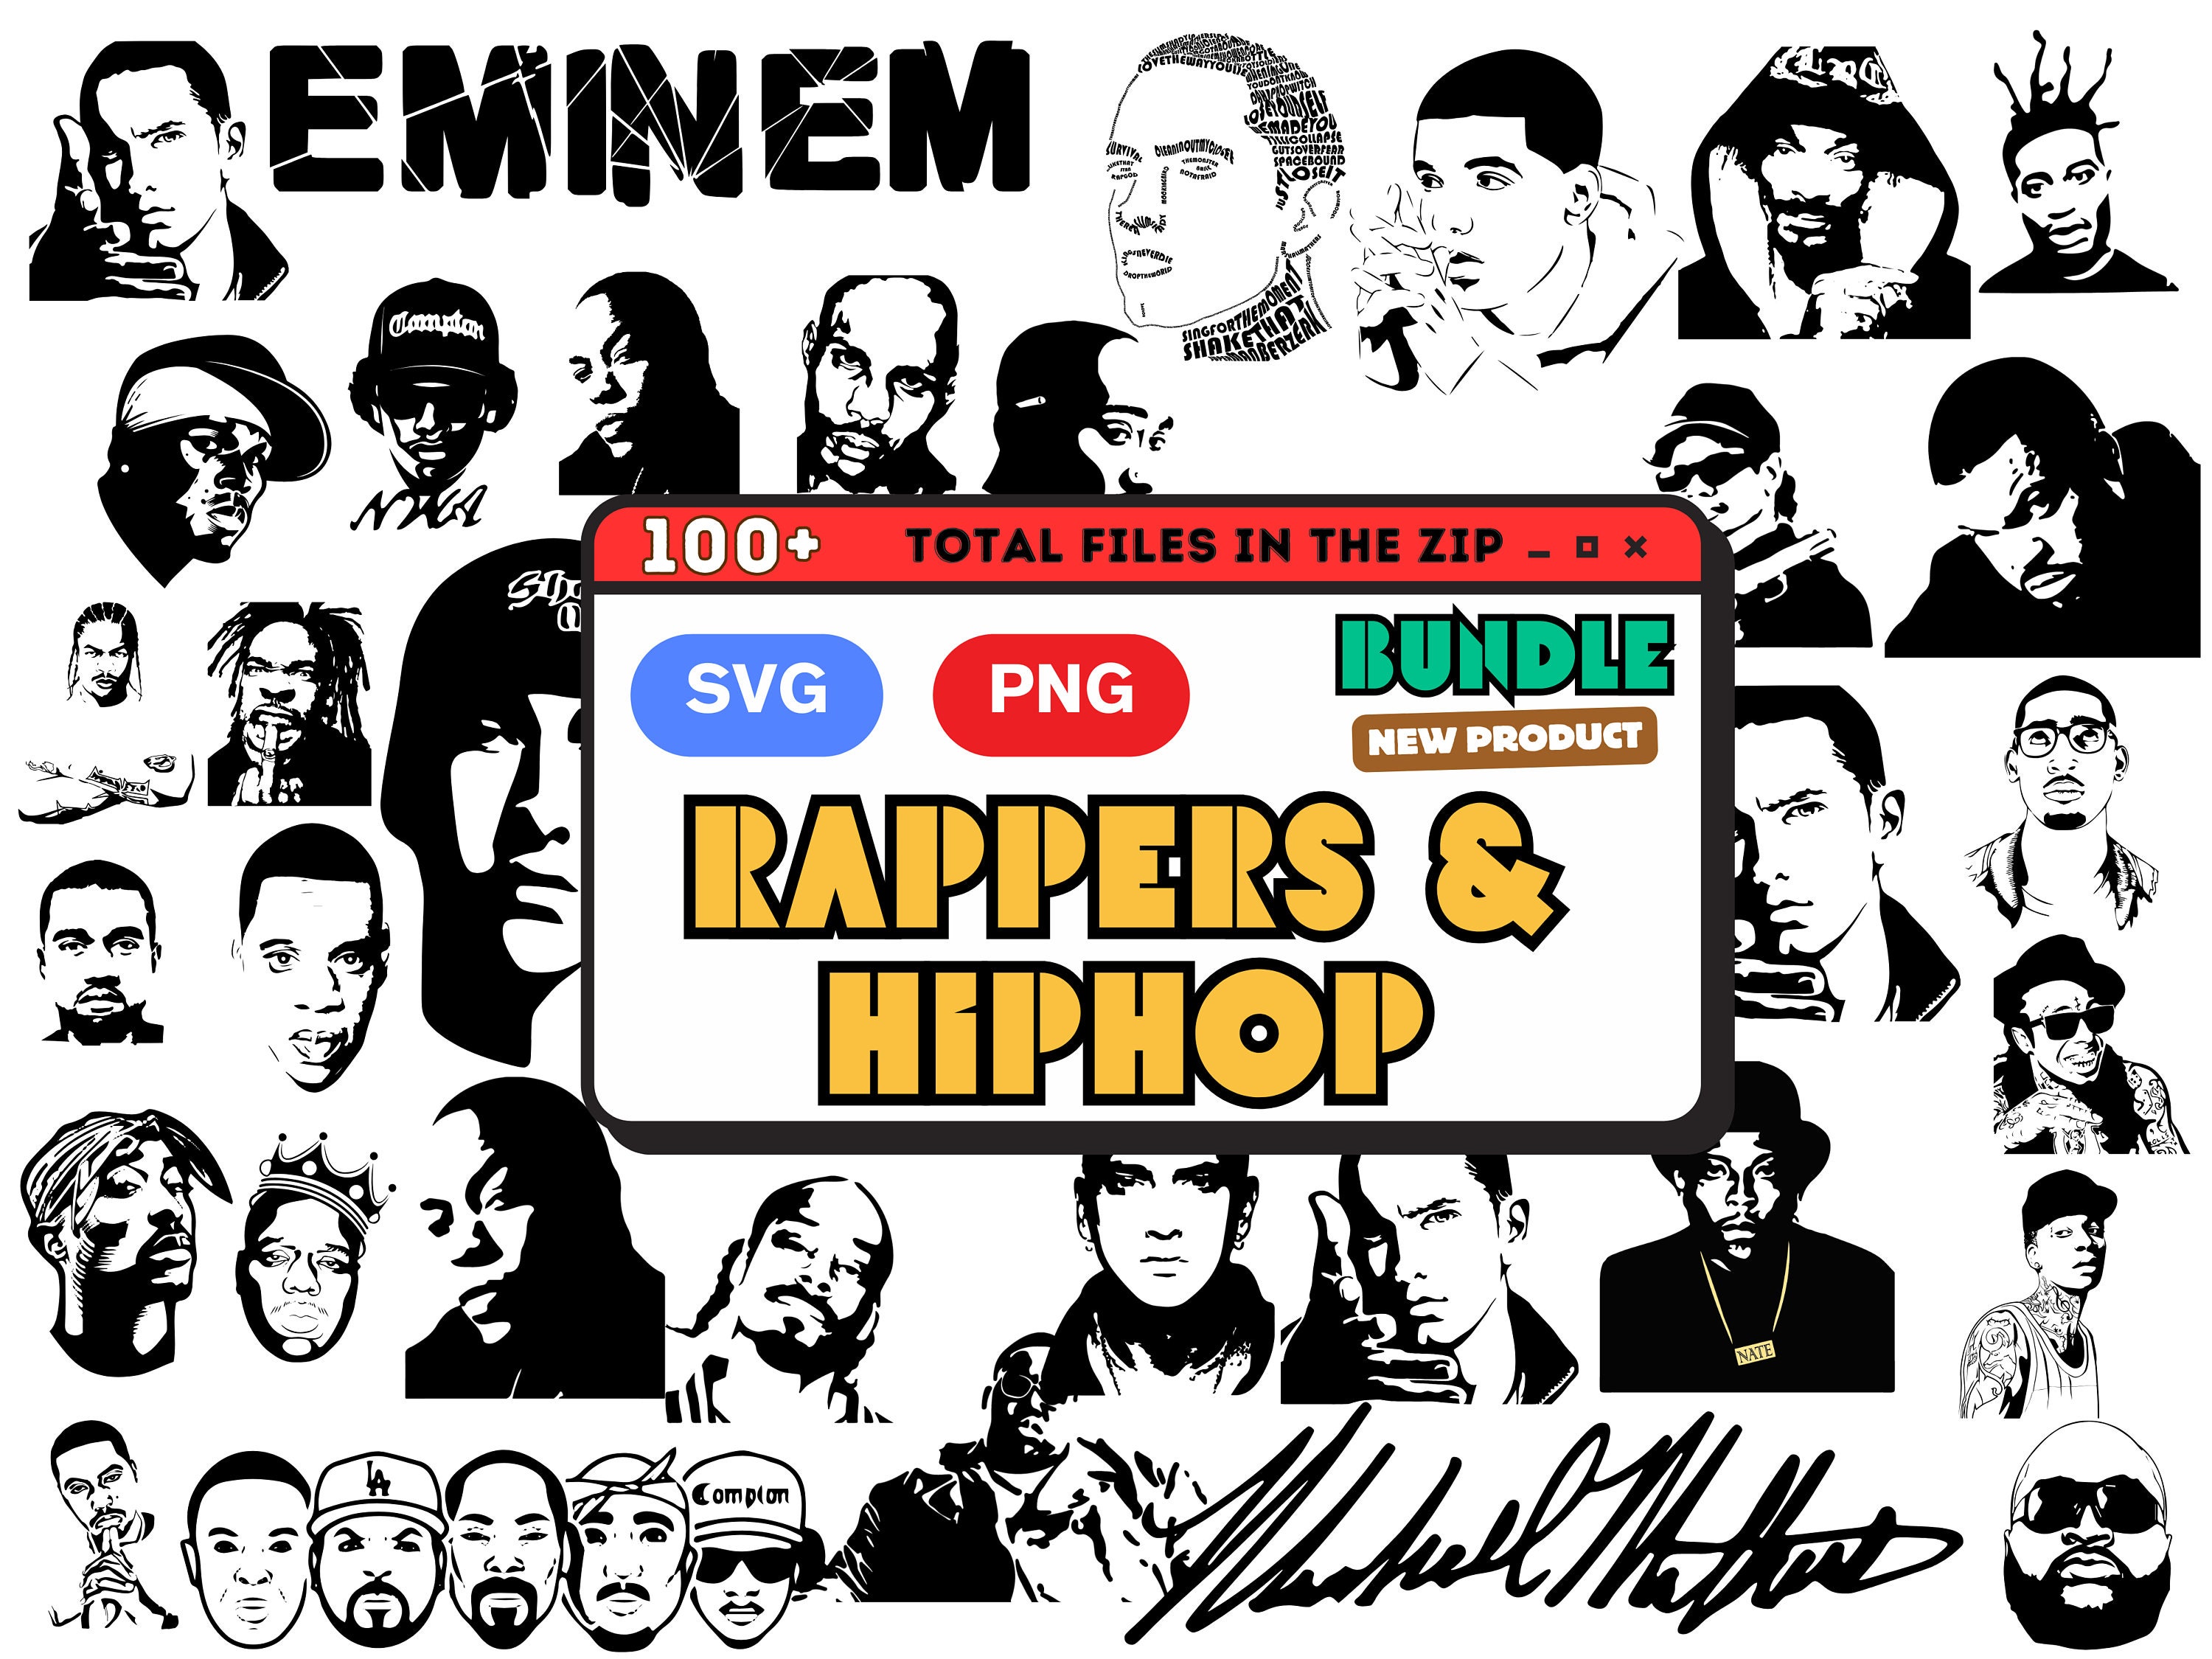 buyartforless Framed Legends of Rap and Hip Hop 80'Sand 90's 24x16 Art  Print Poster, Black